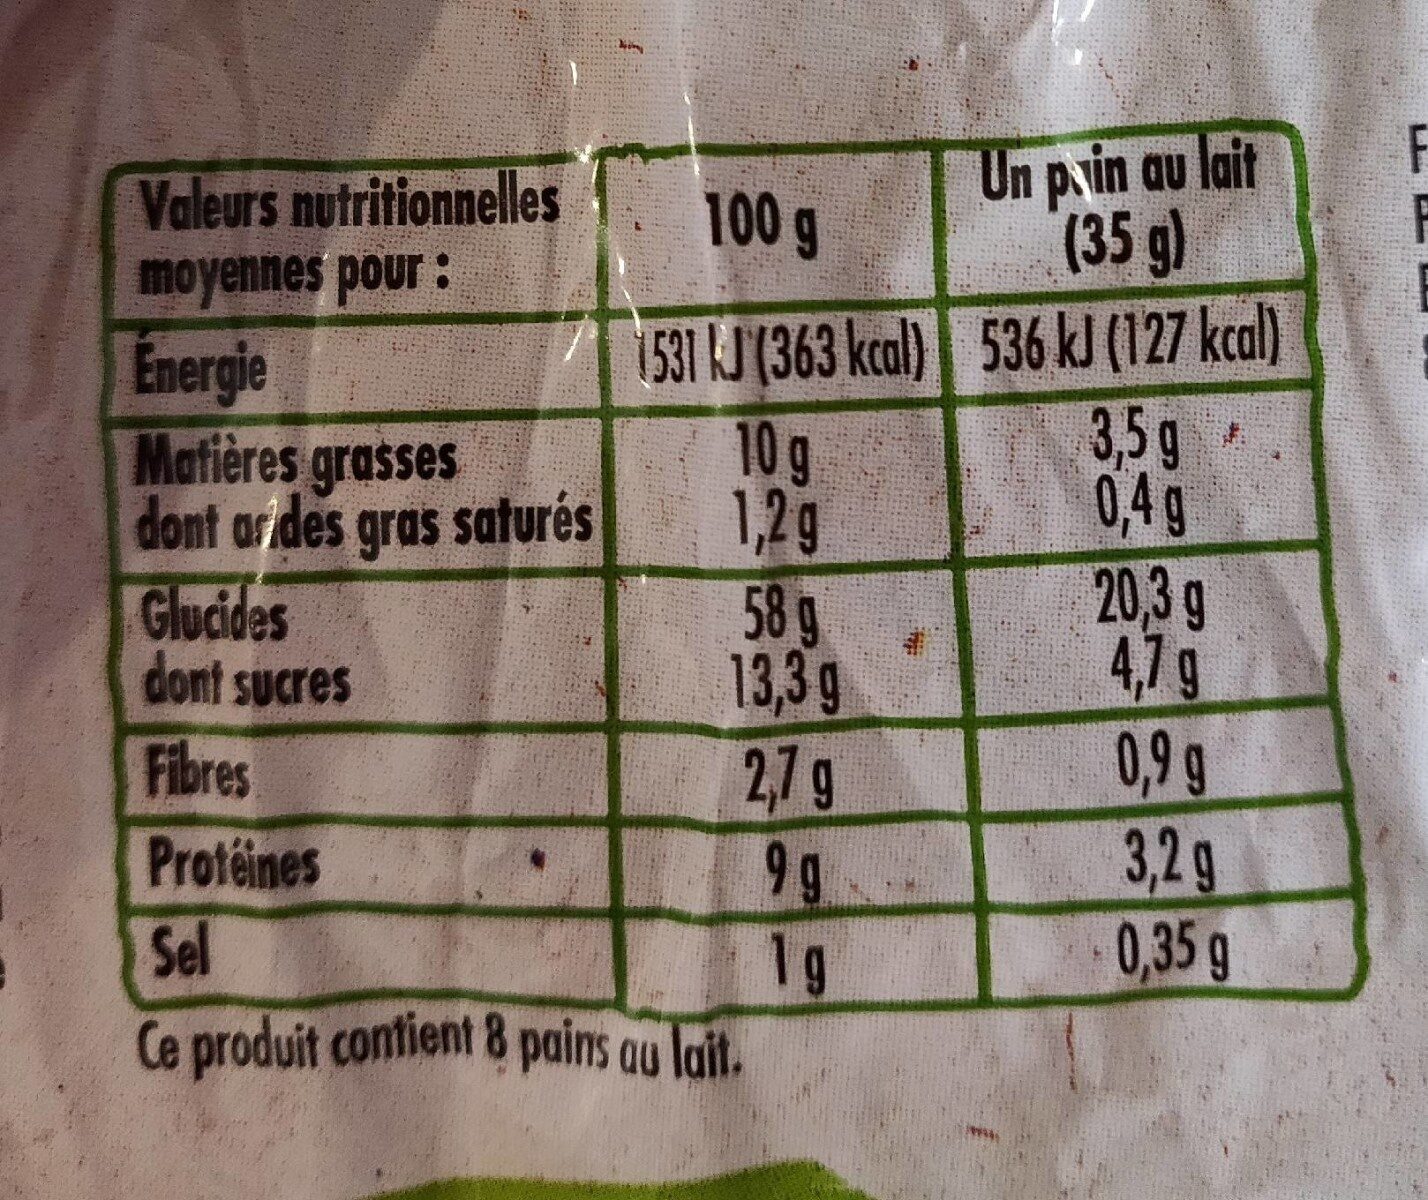 Petits pains au lait pur beurre bio - Nutrition facts - fr